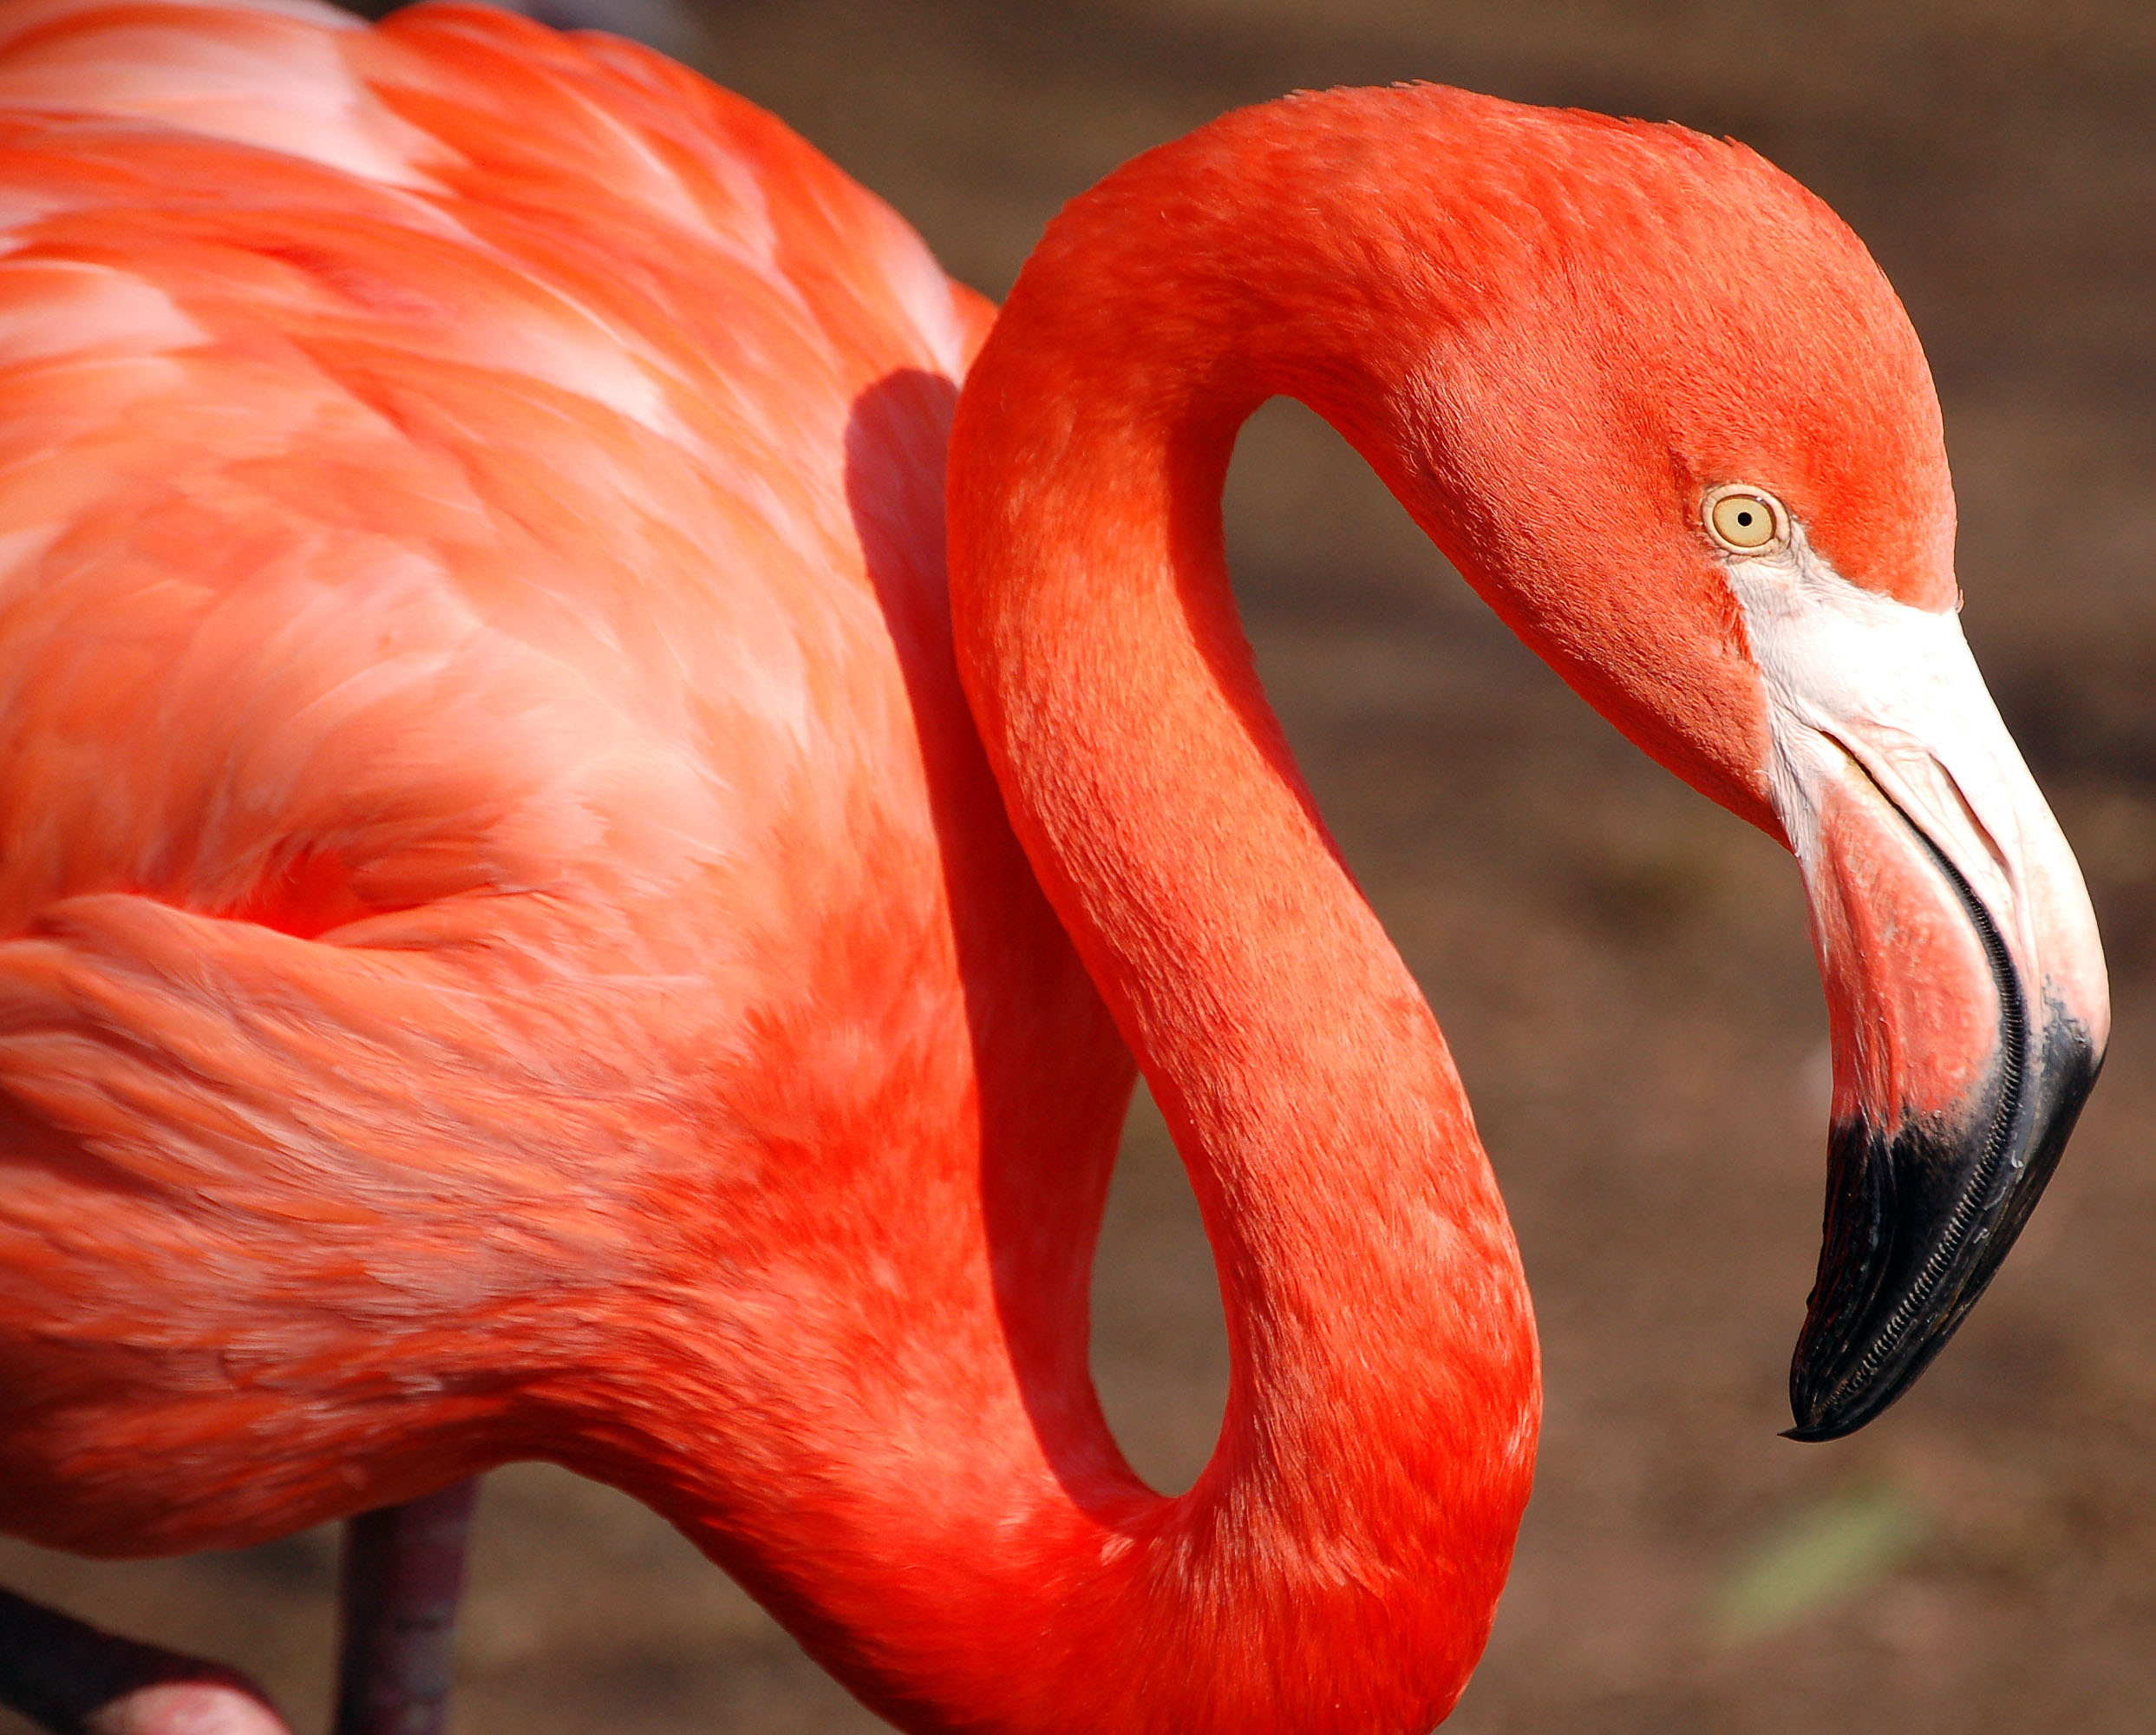 フリー画像動物写真鳥類フラミンゴ赤色/レッド画像素材なら！無料・フリー写真素材のフリーフォト